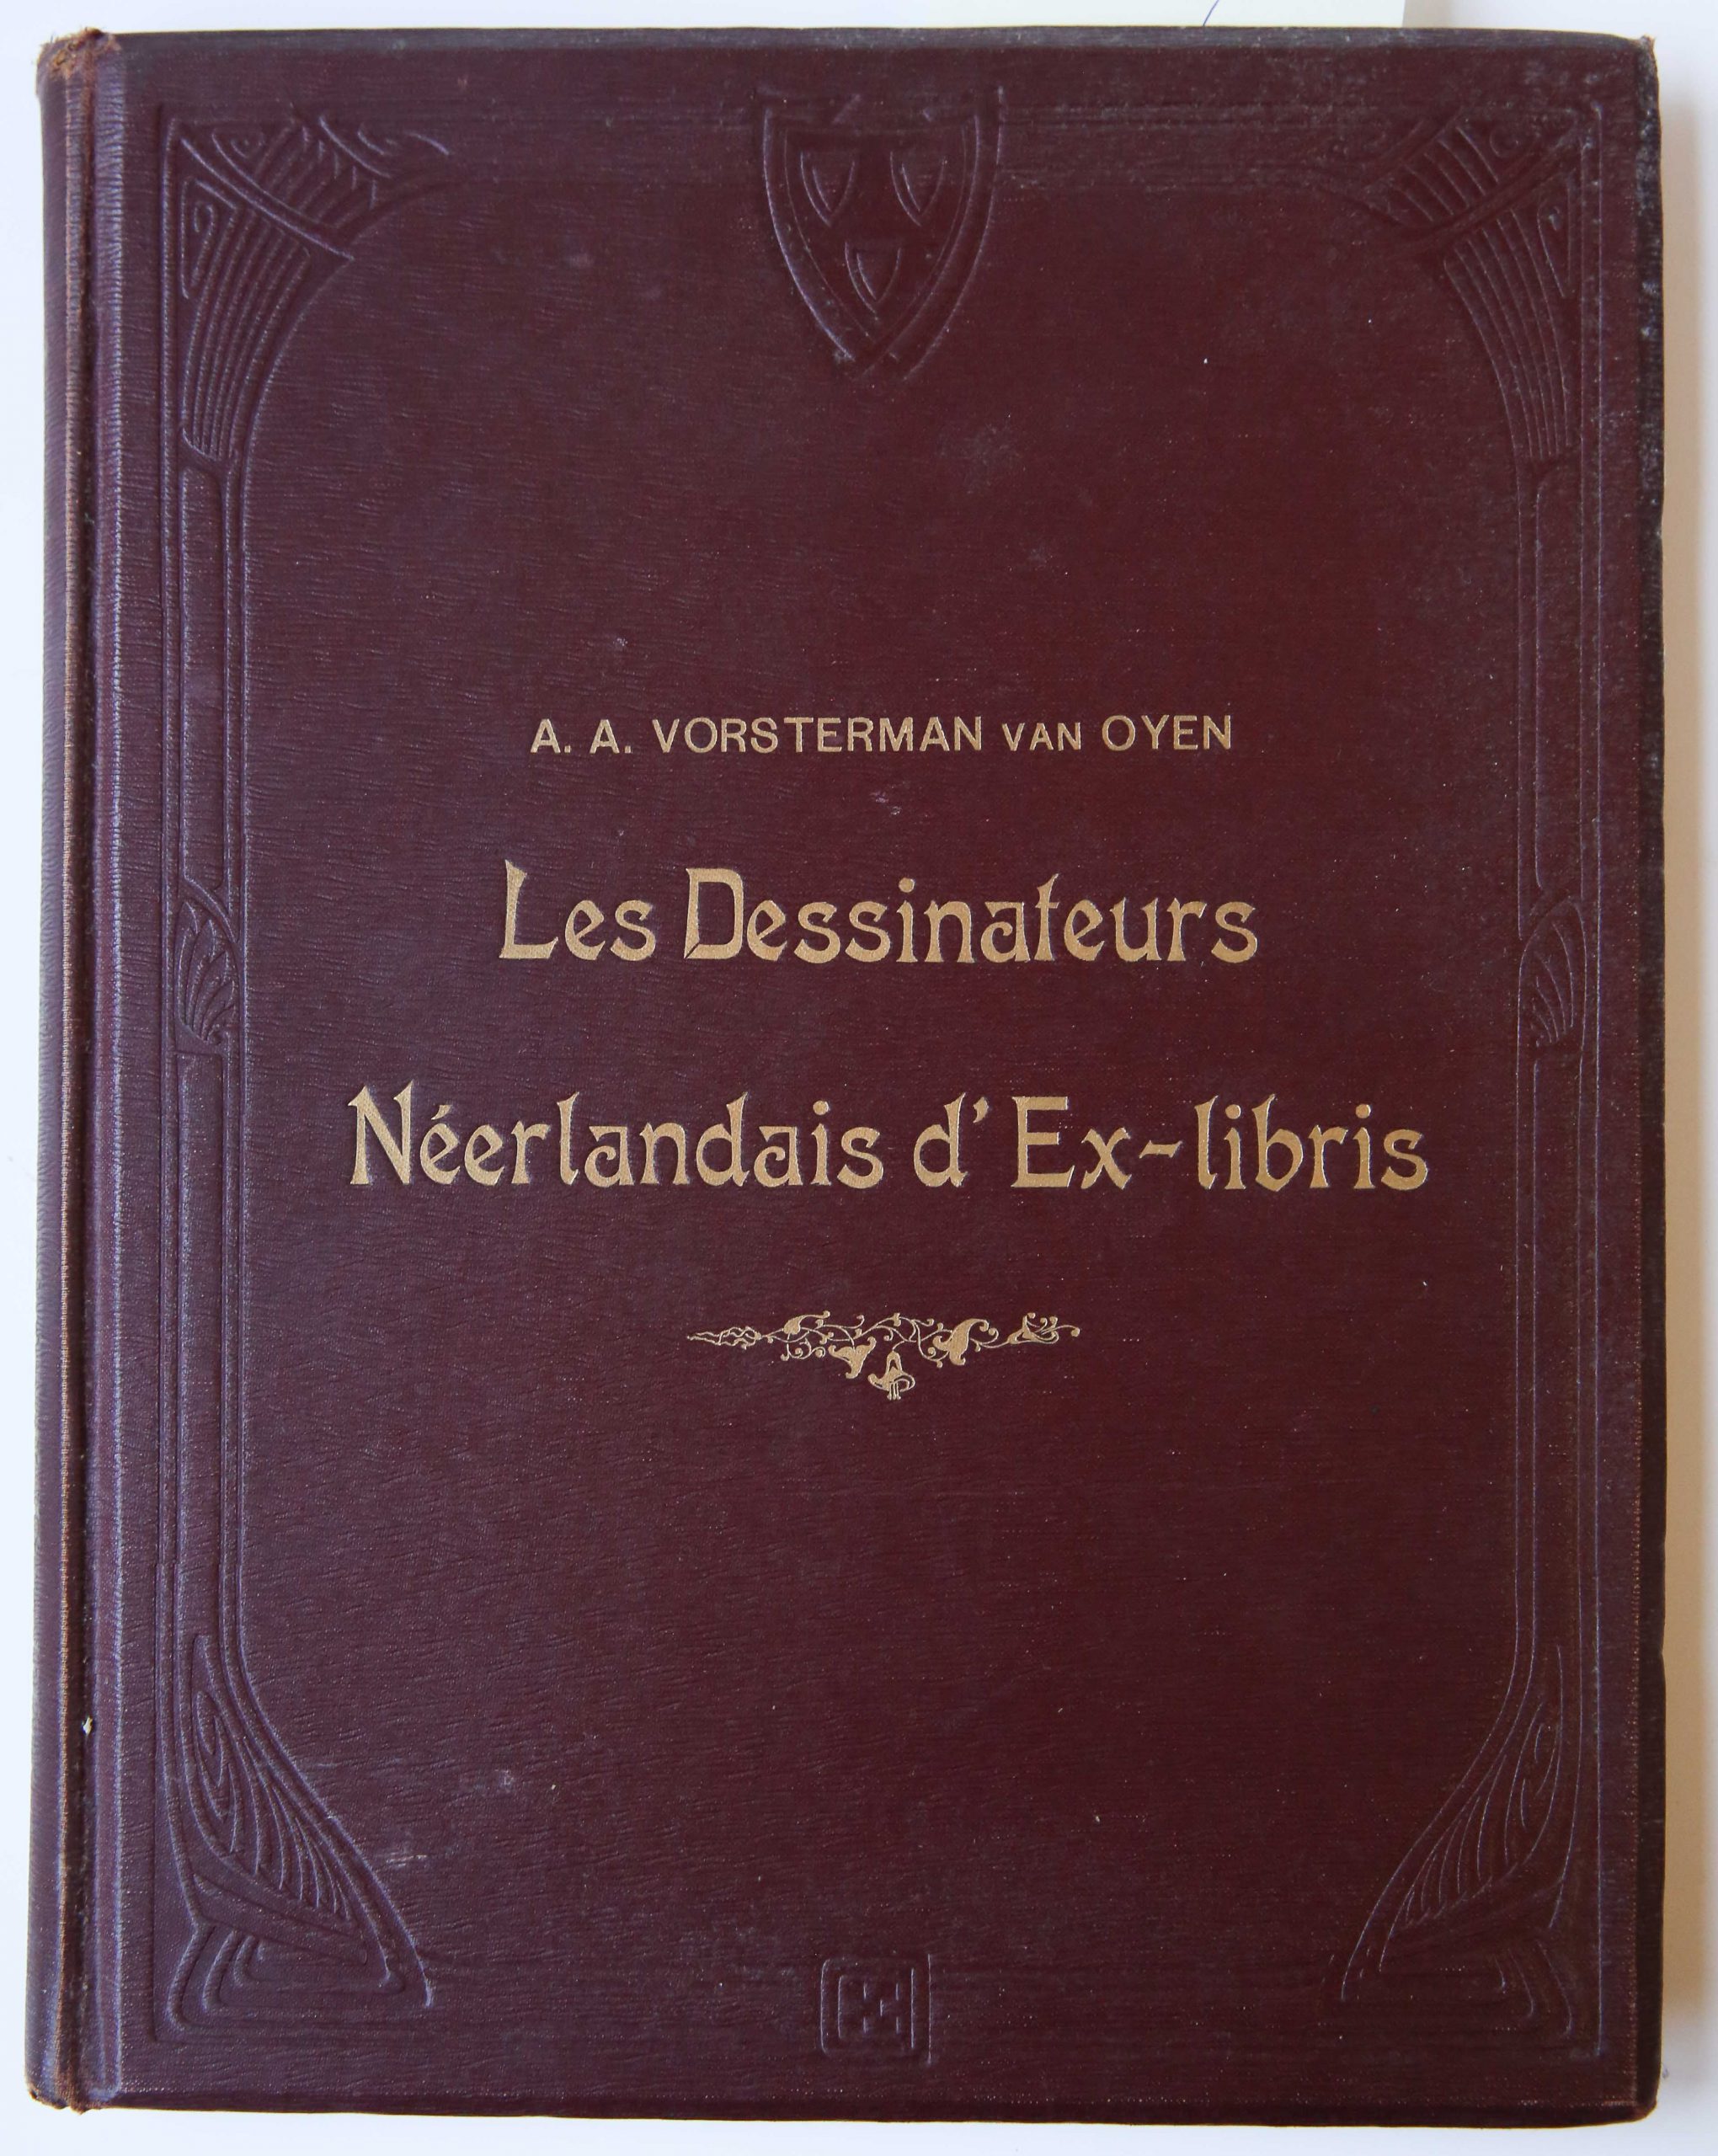 Les dessinateurs néerlandais d'ex-libris. Arnhem 1910. Geb., geïll., 40+70 p.